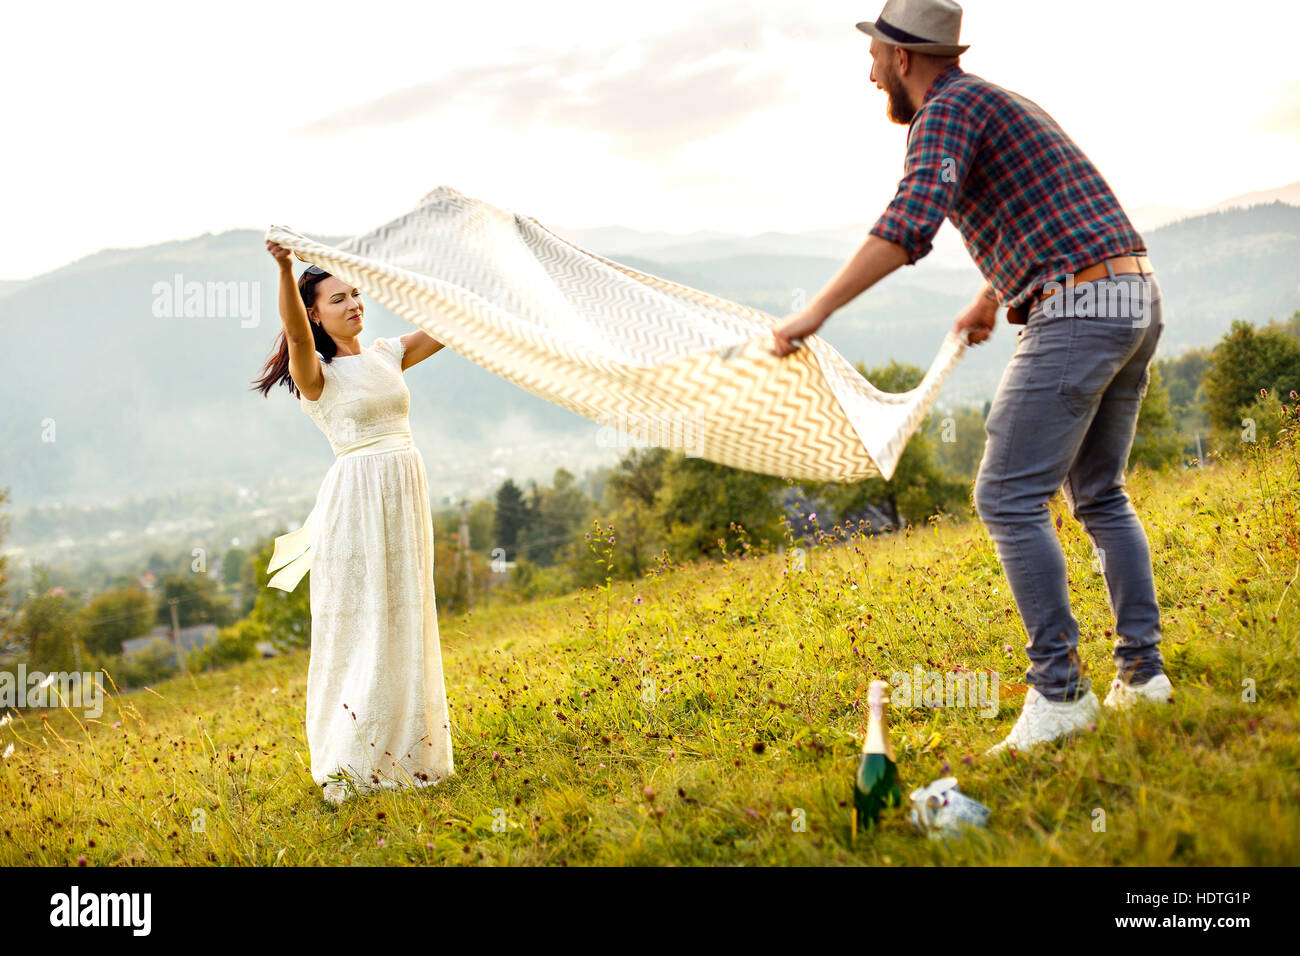 couple in love preparing for picnic. spread white plaid. Stock Photo